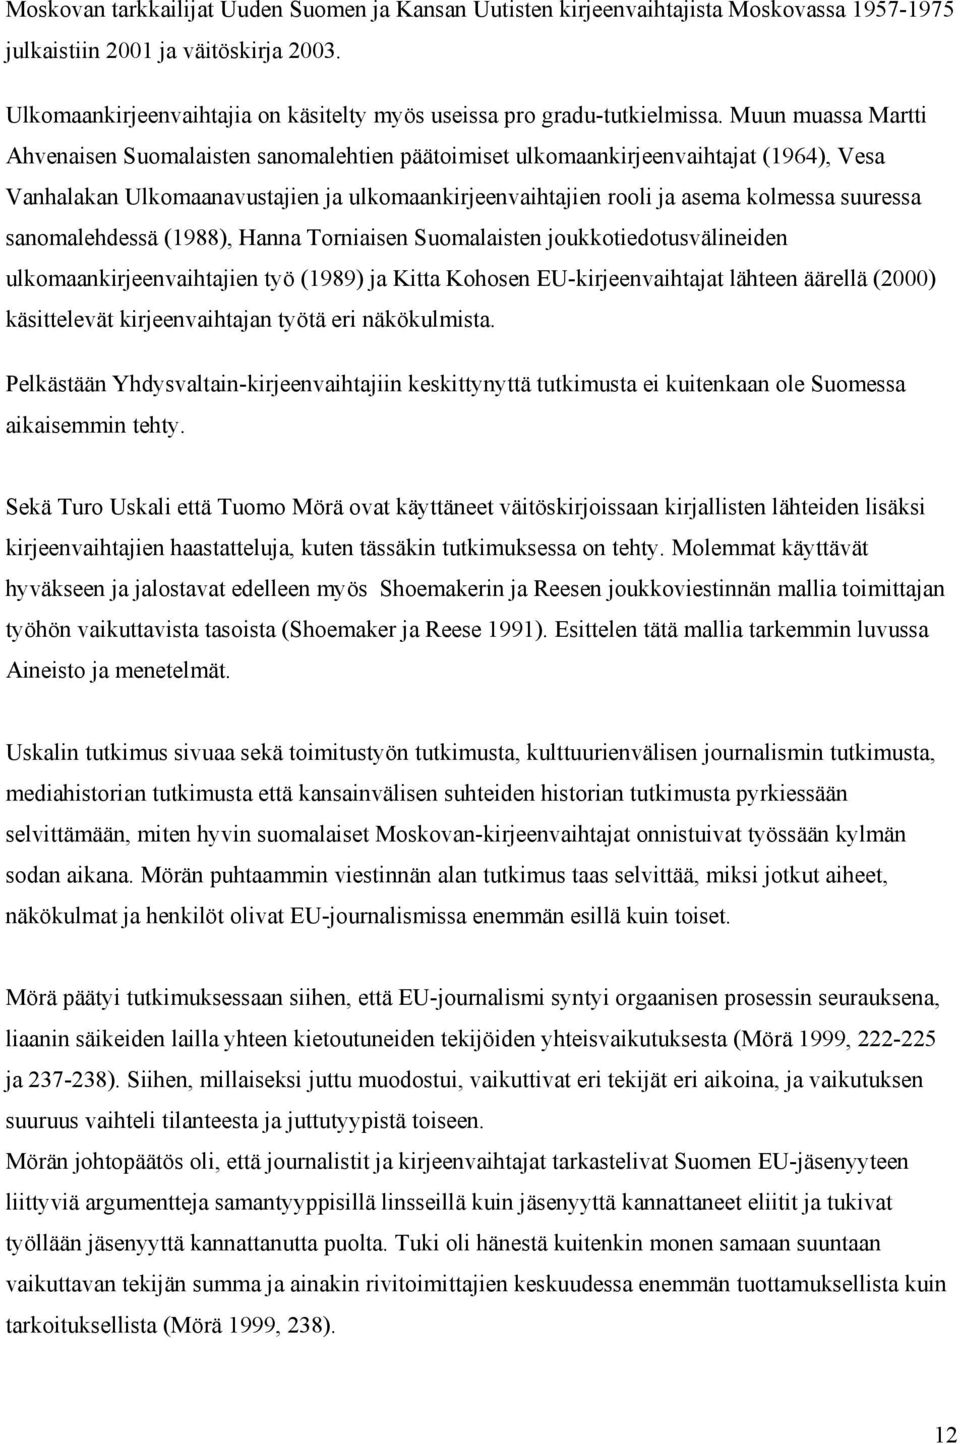 Muun muassa Martti Ahvenaisen Suomalaisten sanomalehtien päätoimiset ulkomaankirjeenvaihtajat (1964), Vesa Vanhalakan Ulkomaanavustajien ja ulkomaankirjeenvaihtajien rooli ja asema kolmessa suuressa